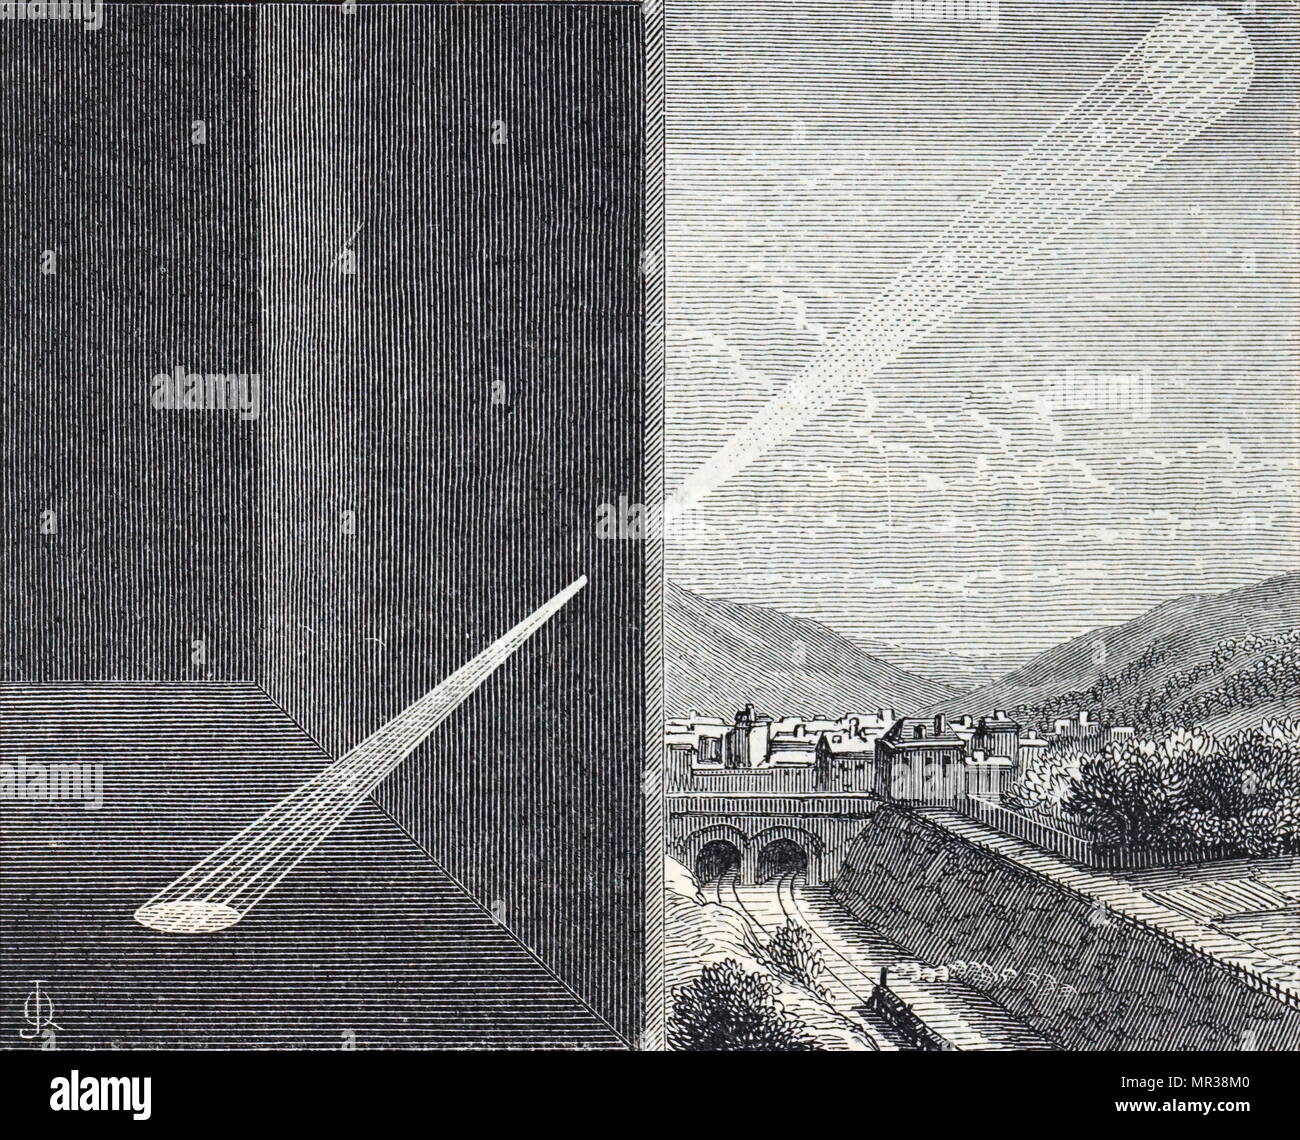 Incisione raffigurante l'immagine del sole essendo proiettata attraverso il foro di una camera oscura. Datata del XIX secolo Foto Stock